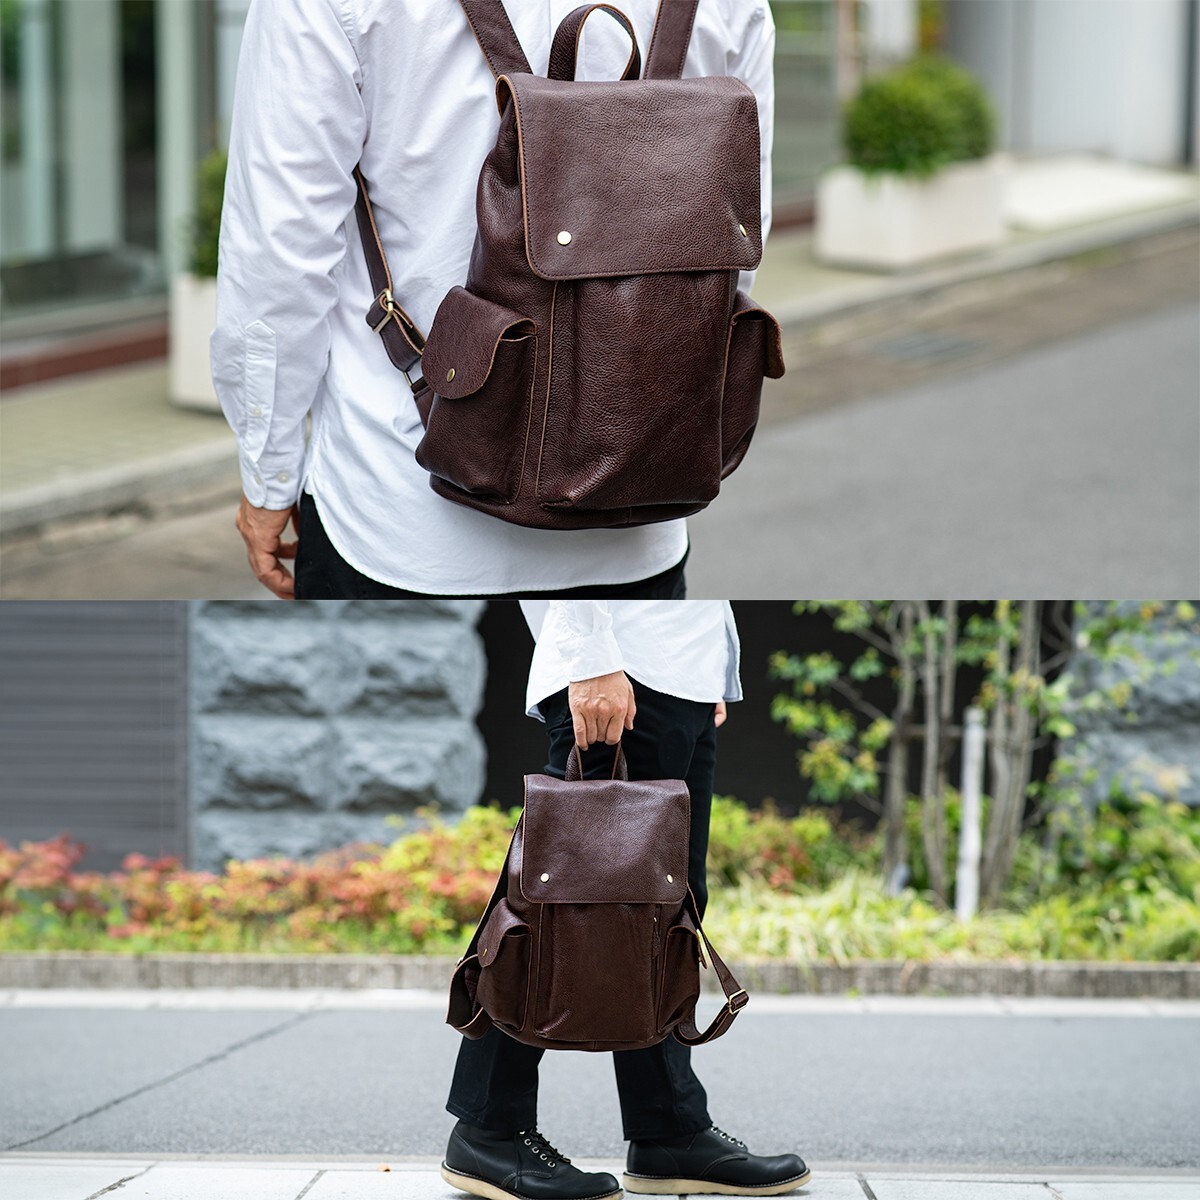 [ новый товар ] натуральная кожа рюкзак рюкзак сумка Day Pack сумка портфель телячья кожа кожа не использовался бесплатная доставка 1 иен чай Brown рисовое поле средний кожа .